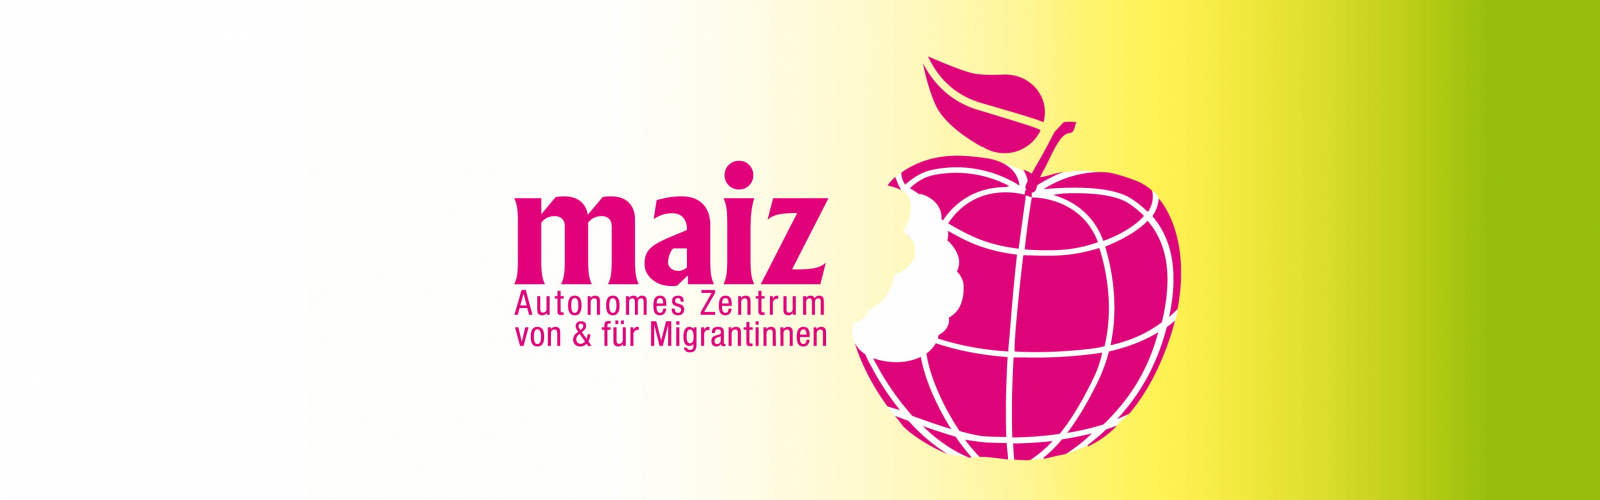 maiz logo praktikum im sommer